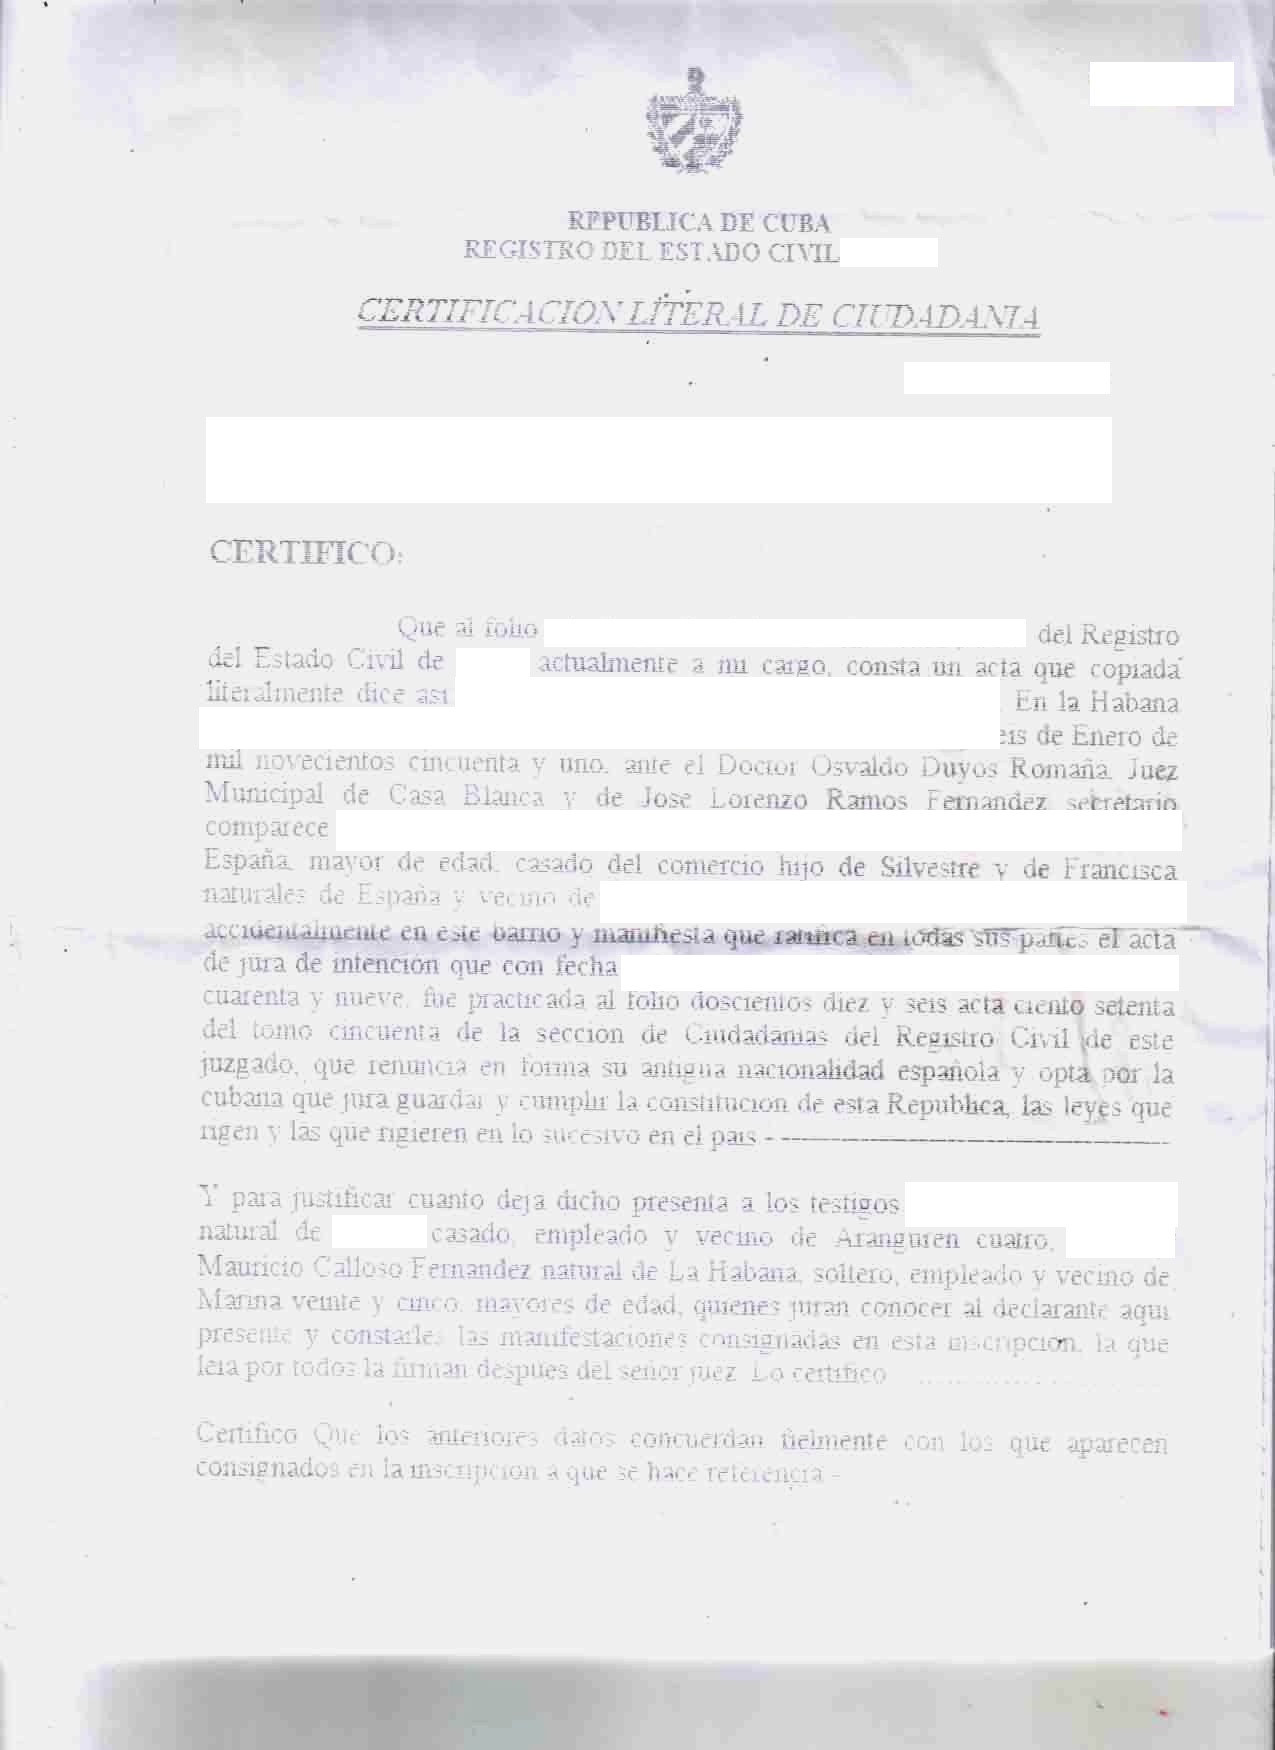 Cuban citizenship certificate